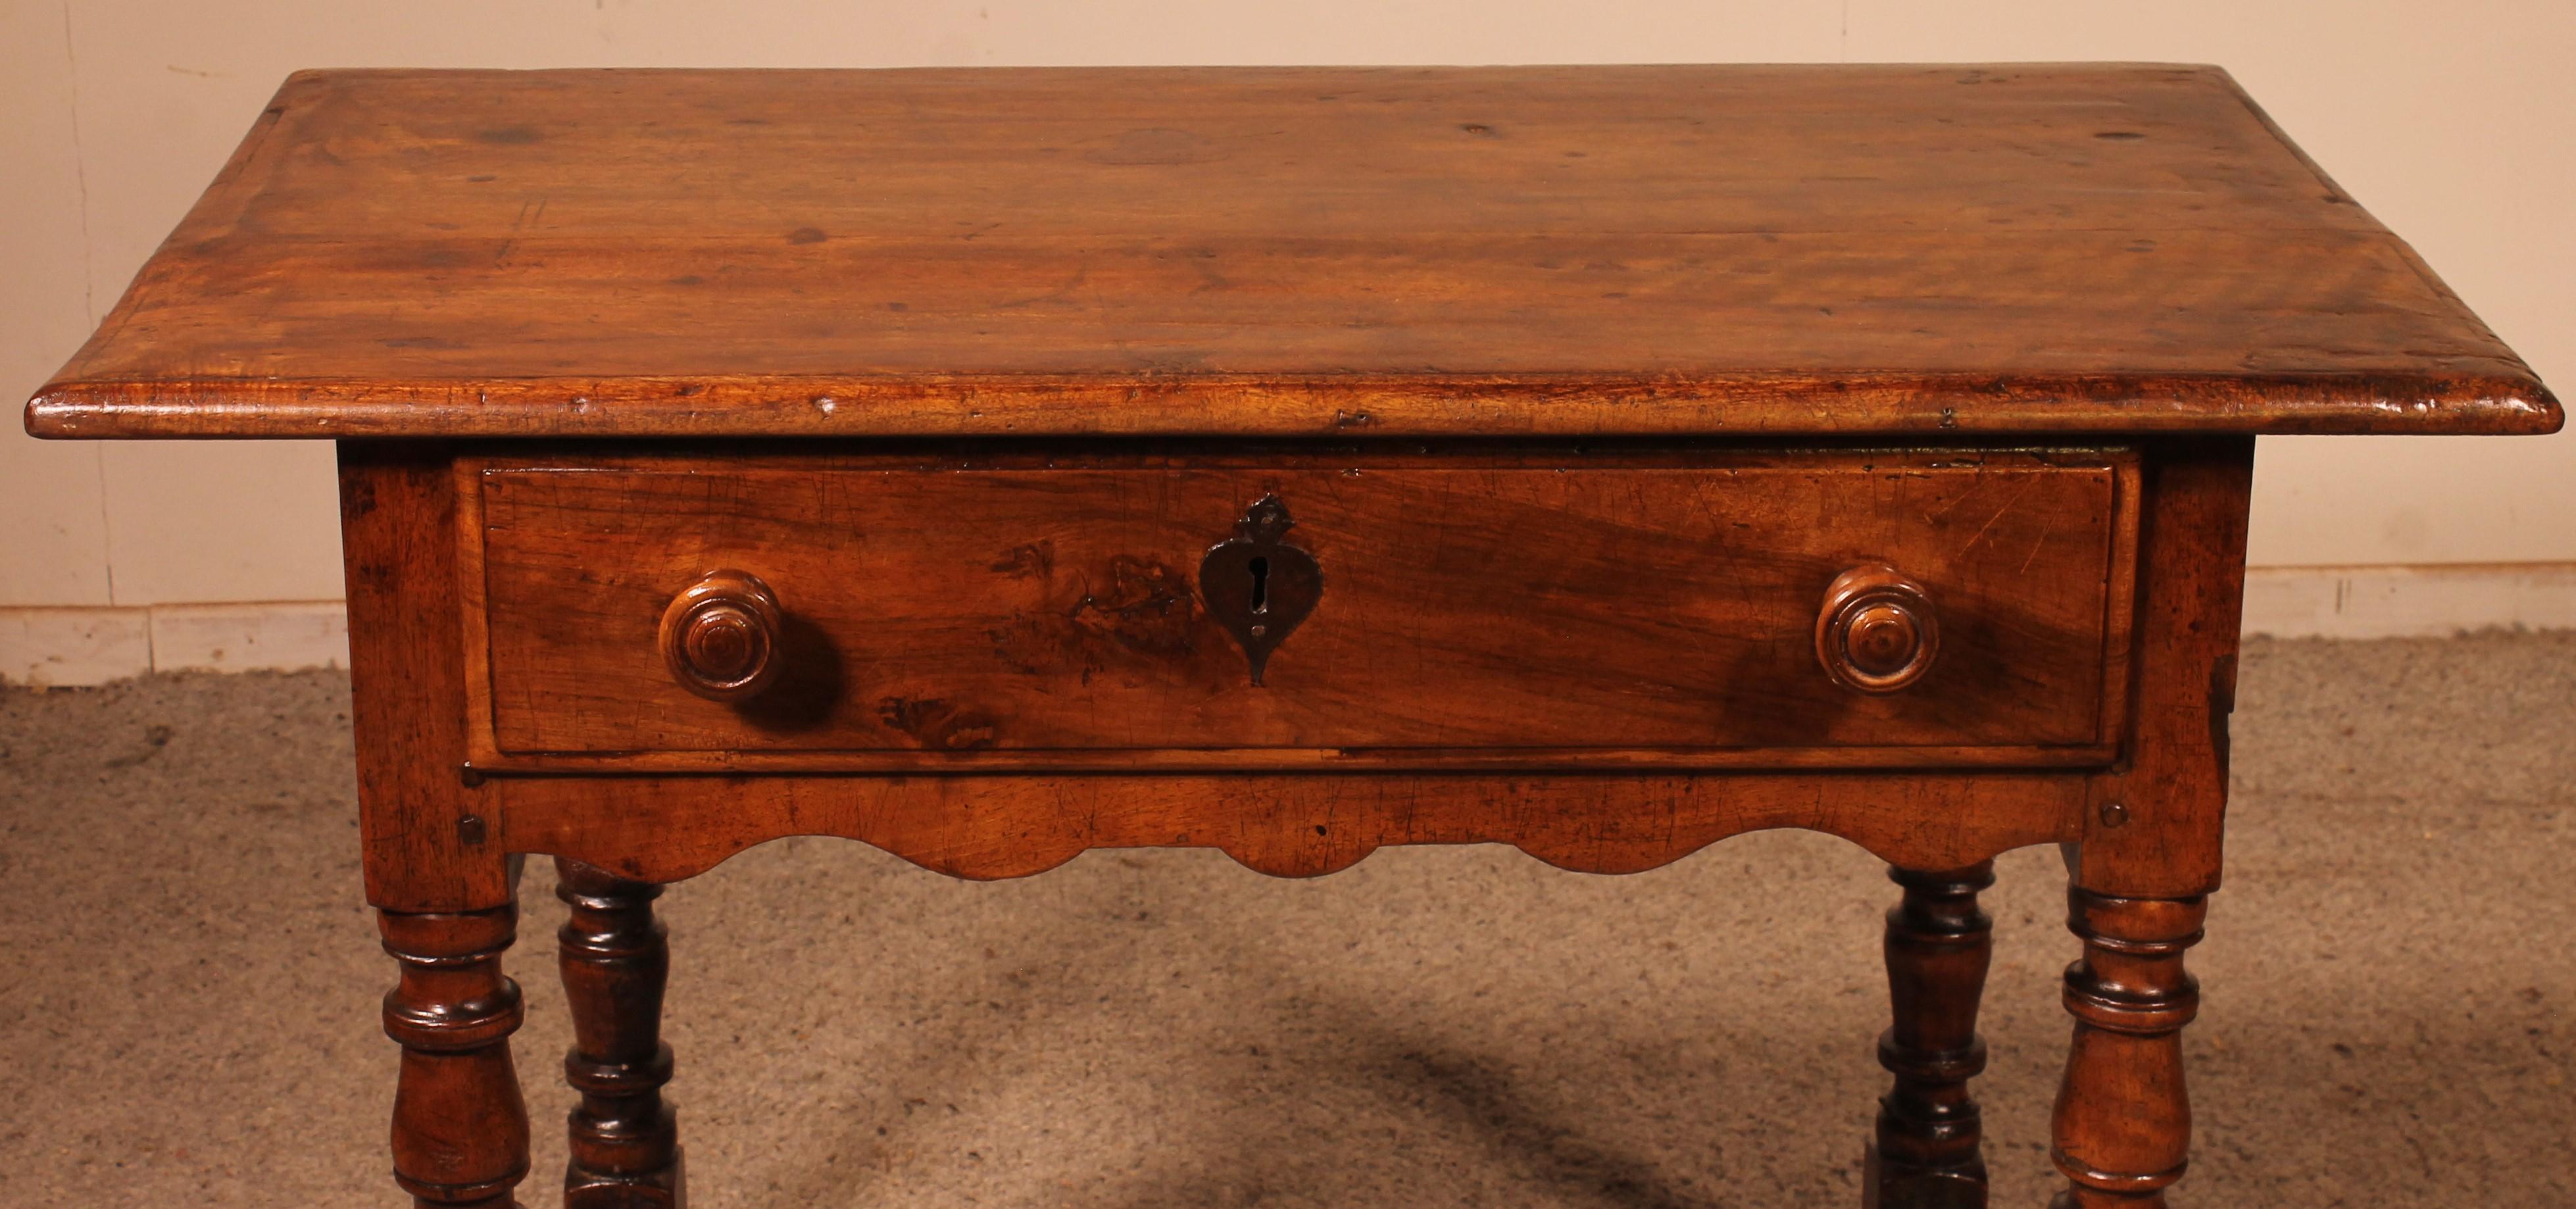 Schöner kleiner Tisch aus Nussbaum aus dem 17. Jahrhundert (aus Italien) mit einer Schublade auf der Vorderseite, die auf einer sehr eleganten Basis mit gedrechselten Beinen ruht, die durch einen Abstandshalter verbunden sind und mit Kugeln